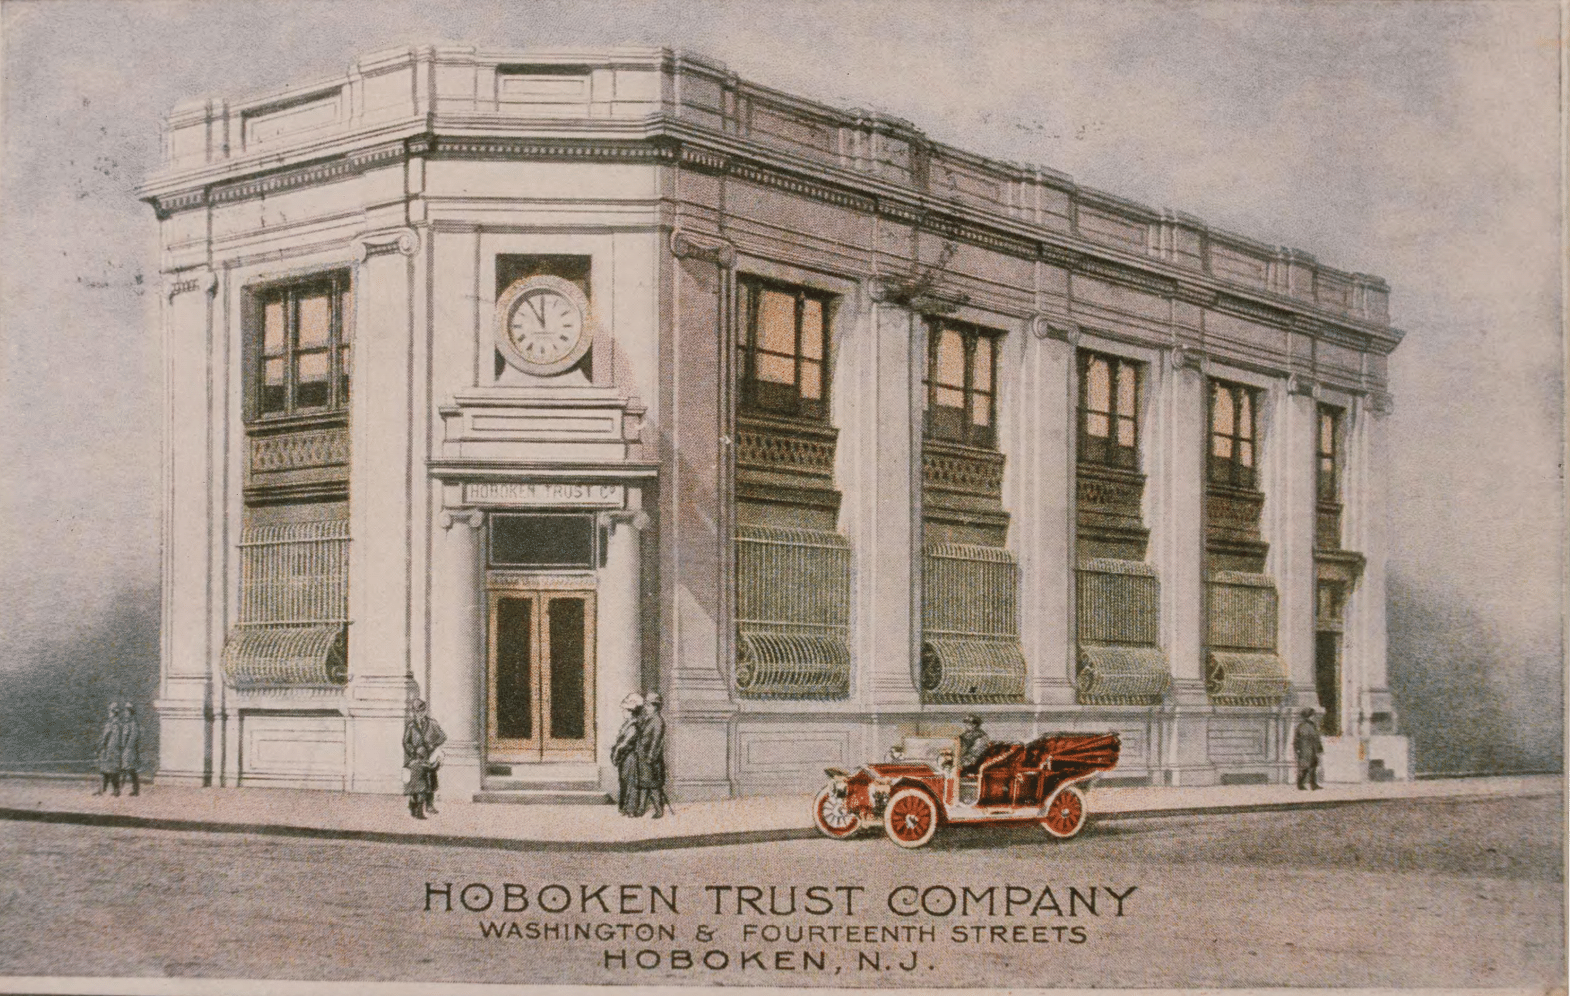 Hoboken Trust Company back then